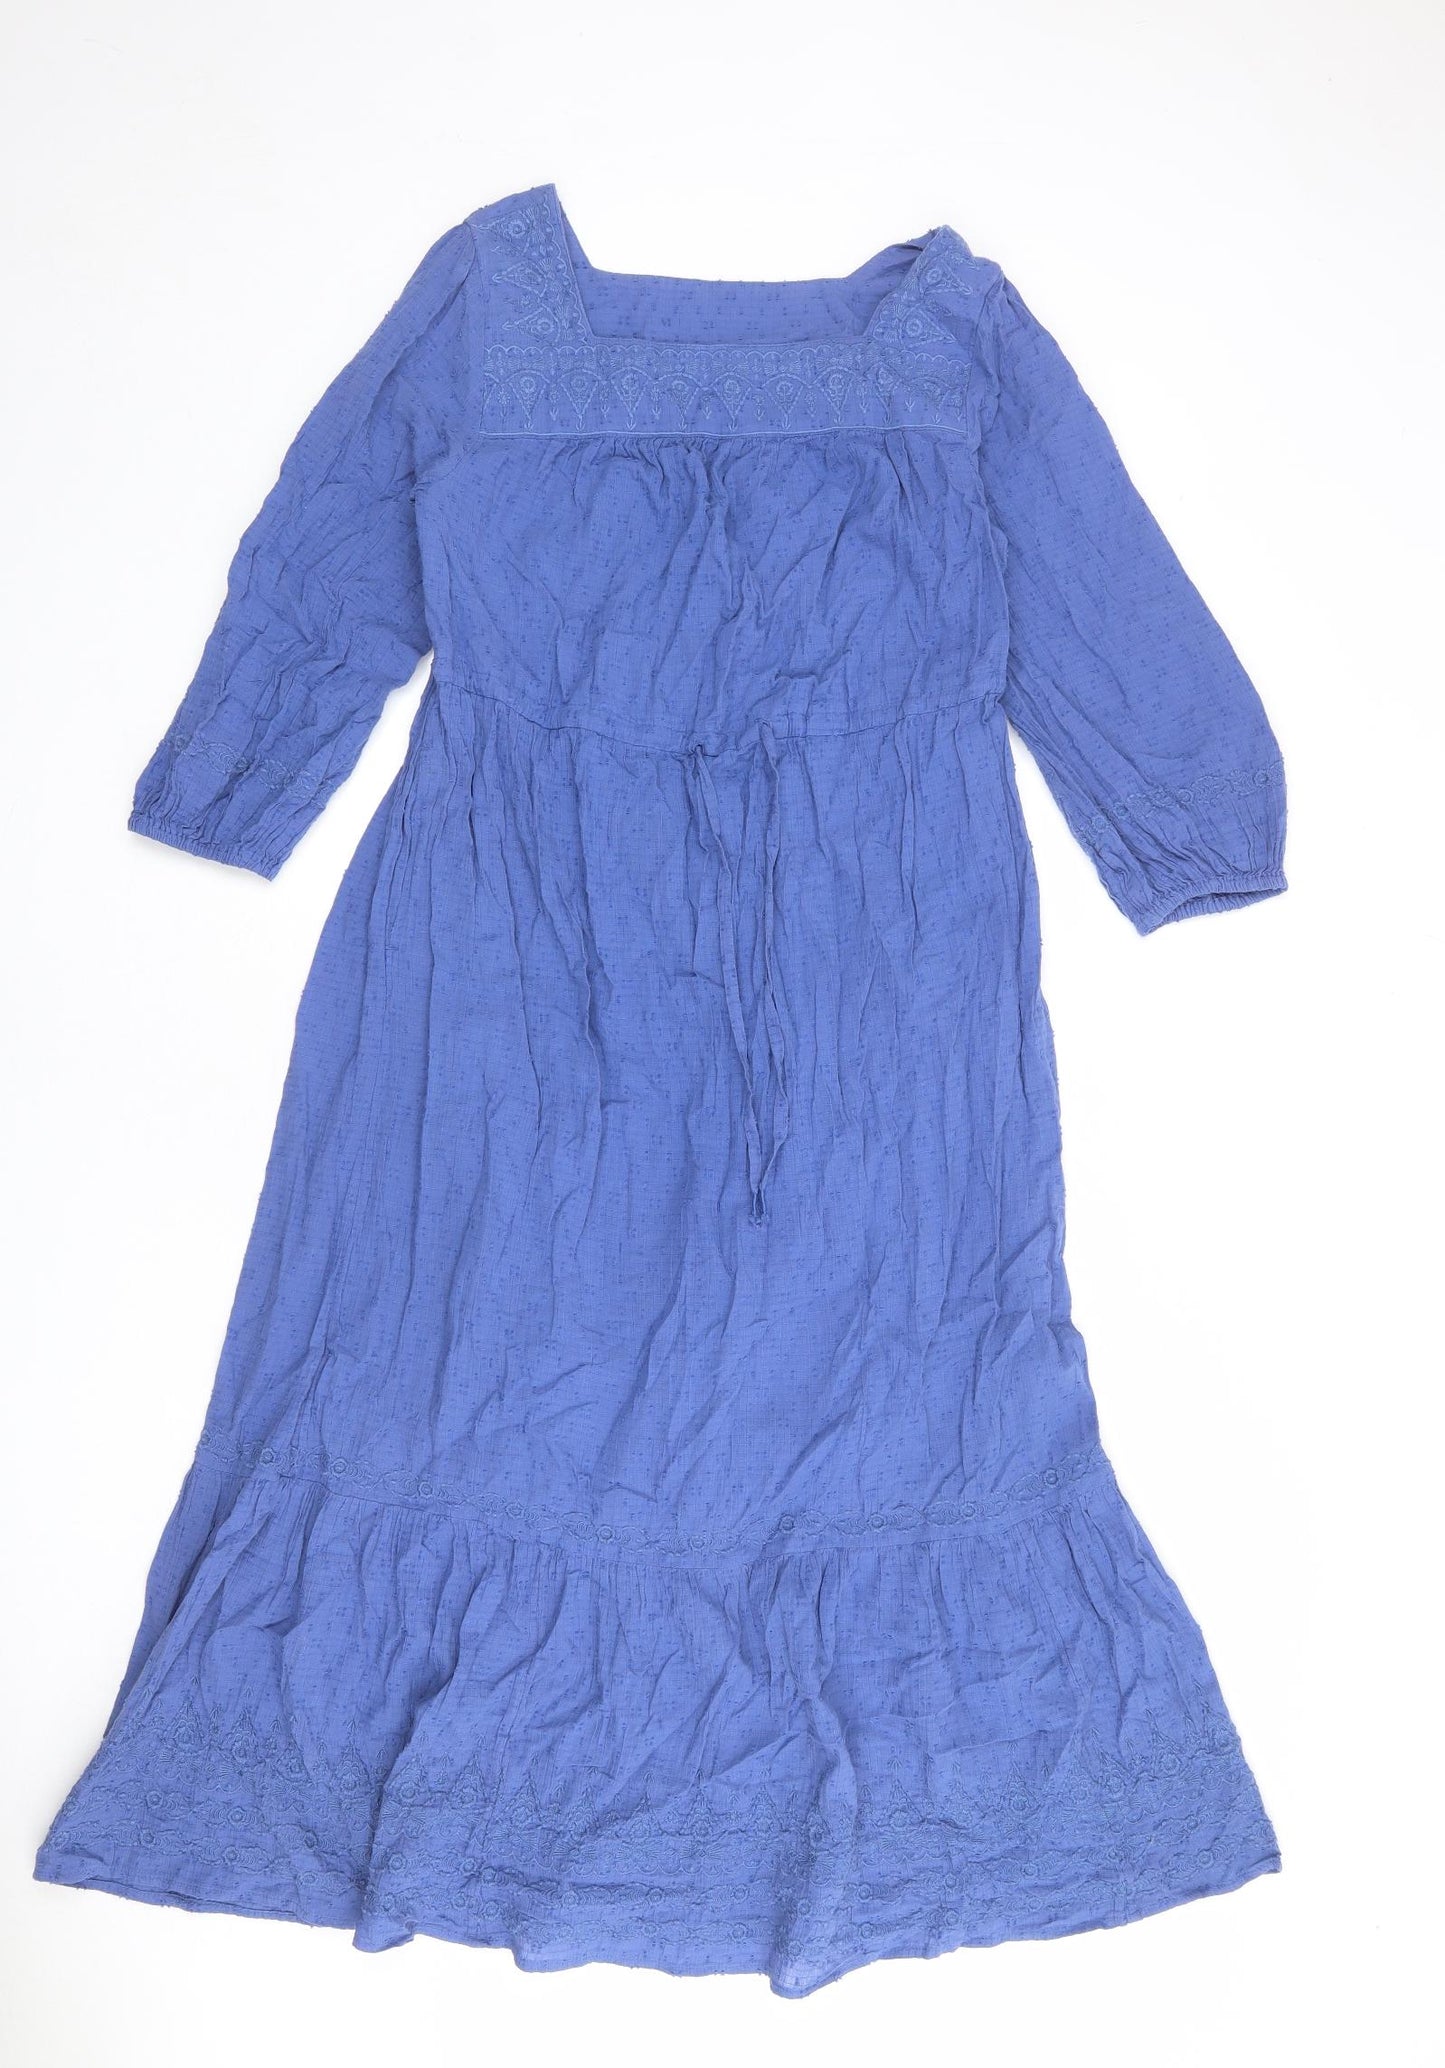 Per Una Womens Blue Geometric 100% Cotton Trapeze & Swing Size 8 Square Neck Pullover